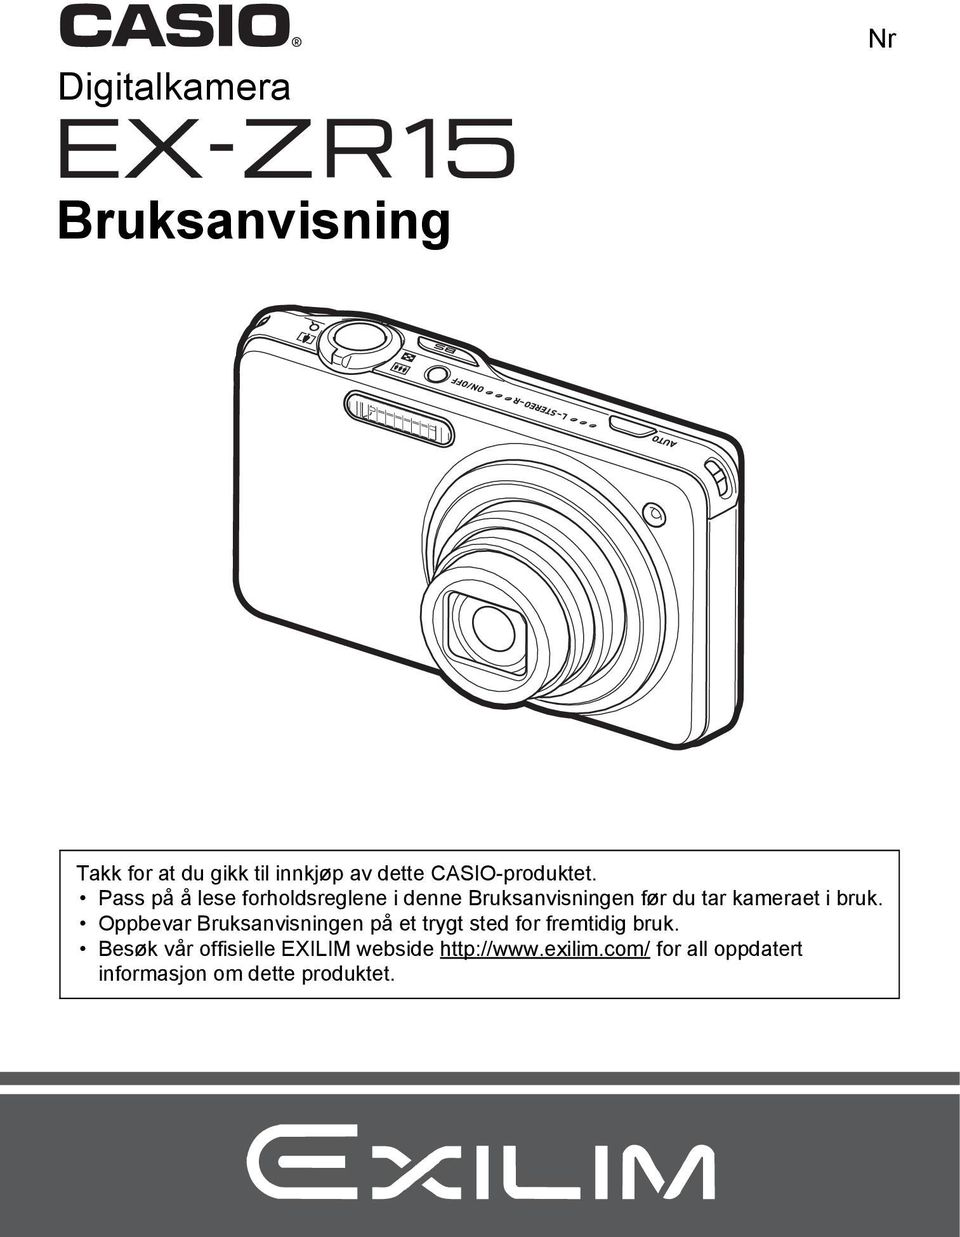 Pass på å lese forholdsreglene i denne Bruksanvisningen før du tar kameraet i bruk.